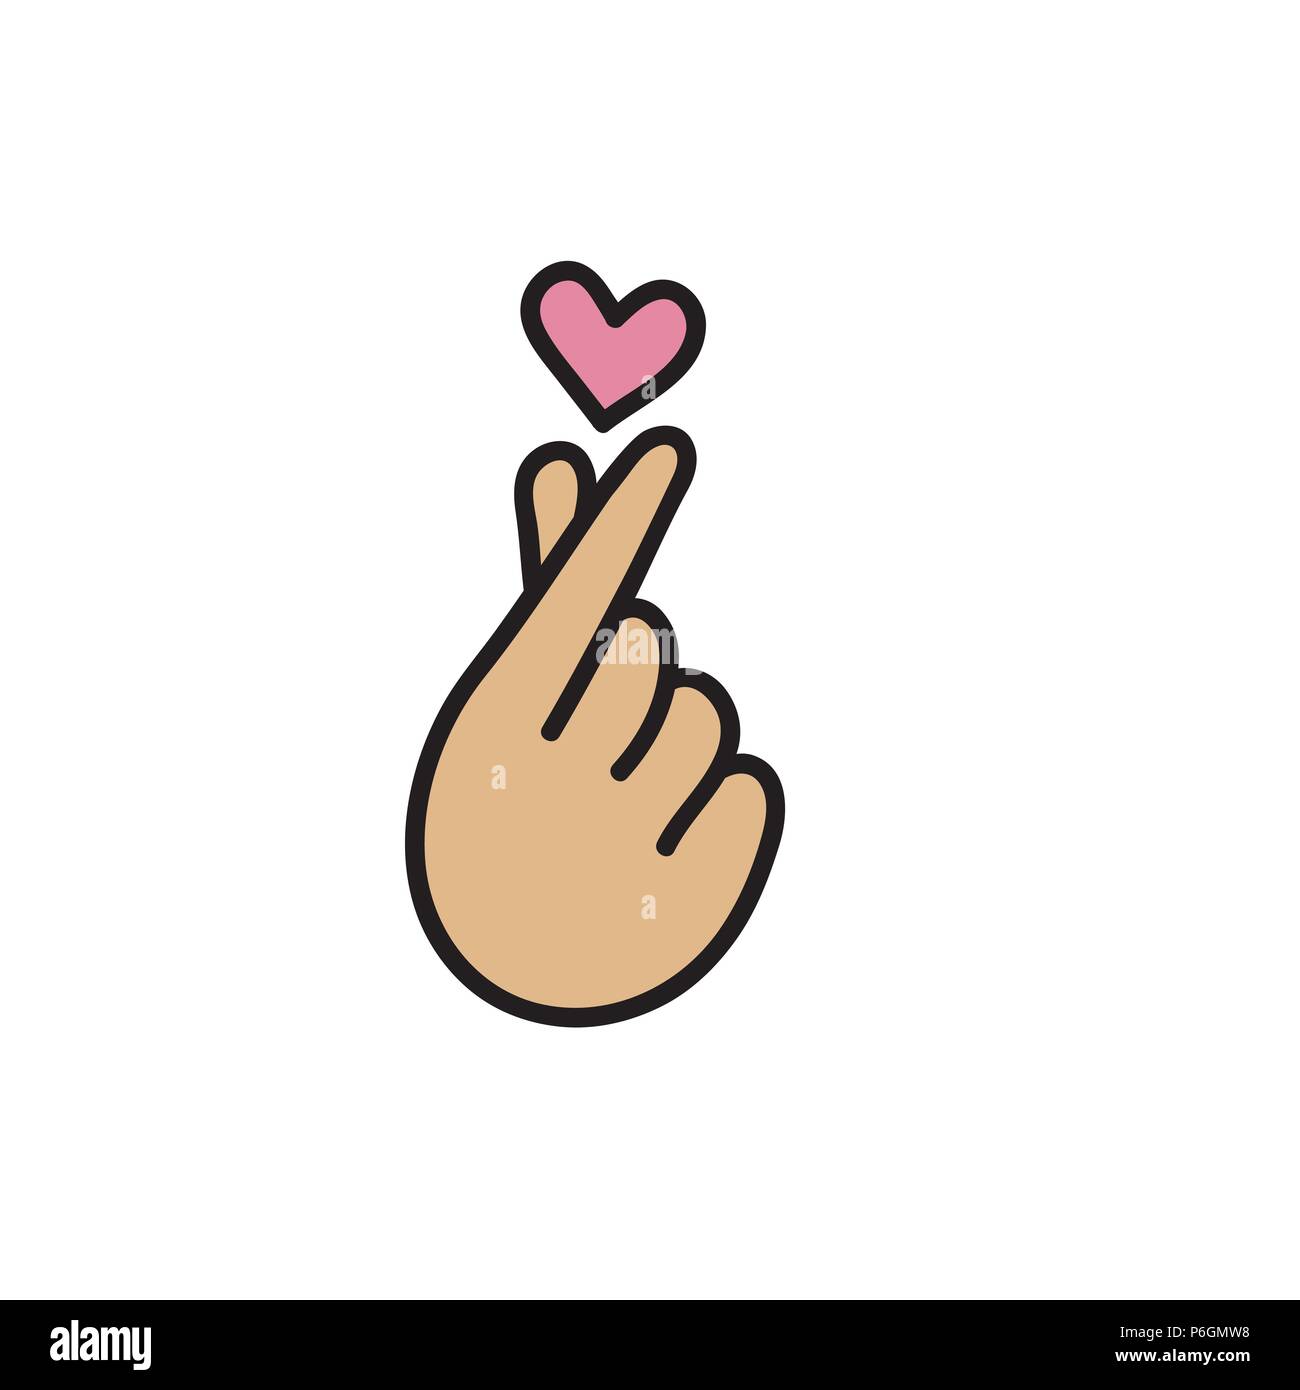 Koreanische Herz Liebe Symbol Finger Machen Sie Kleine Herzen Liebe Symbol Fliegende Herzen Vector Illustration Stock Vektorgrafik Alamy